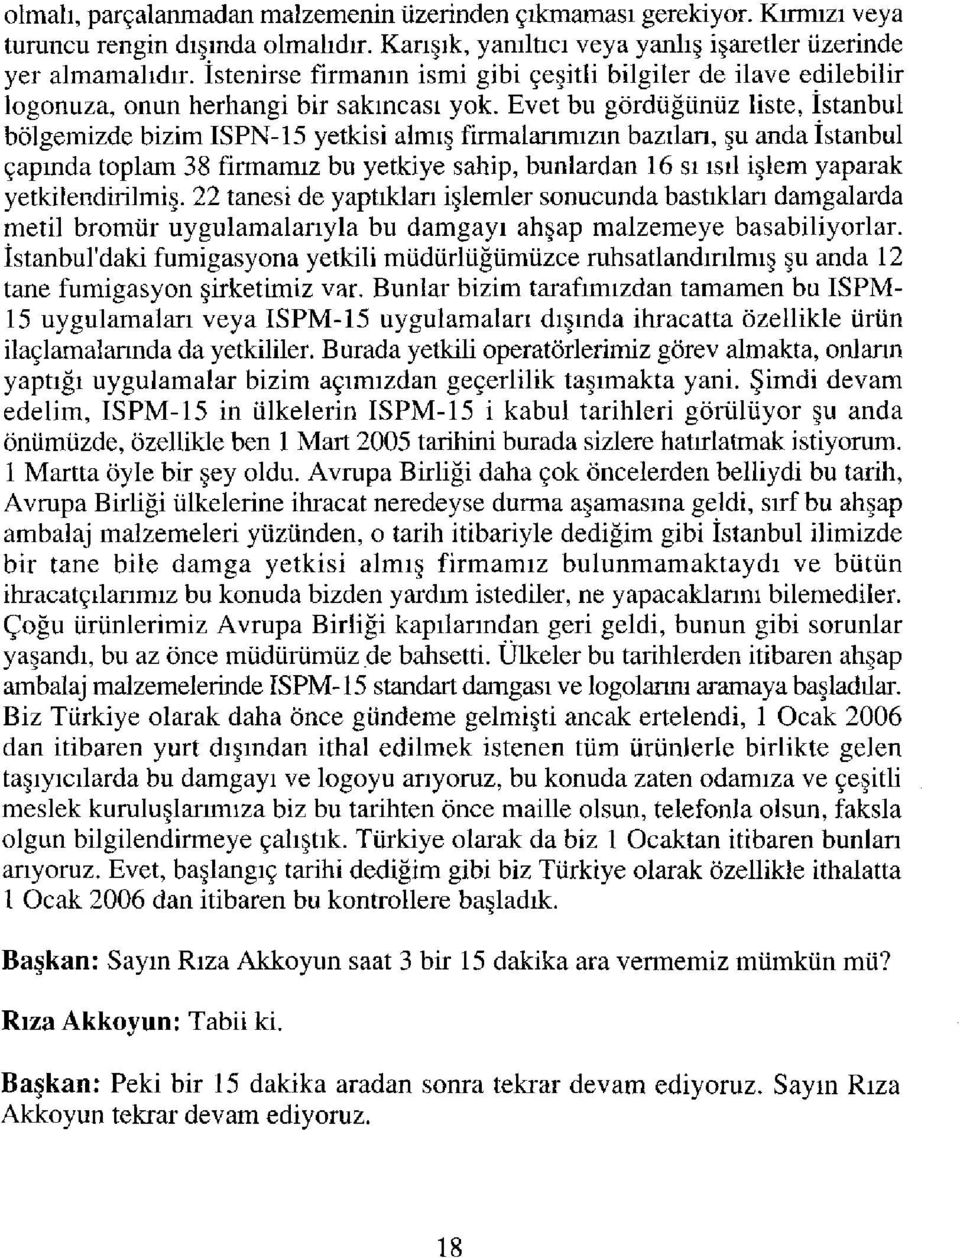 Evet bu gördüğünüz liste, İstanbul bölgemizde bizim ISPN-15 yetkisi almış firmalarımızın bazıları, şu anda İstanbul çapında toplam 38 firmamız bu yetkiye sahip, bunlardan 16 sı ısıl işlem yaparak